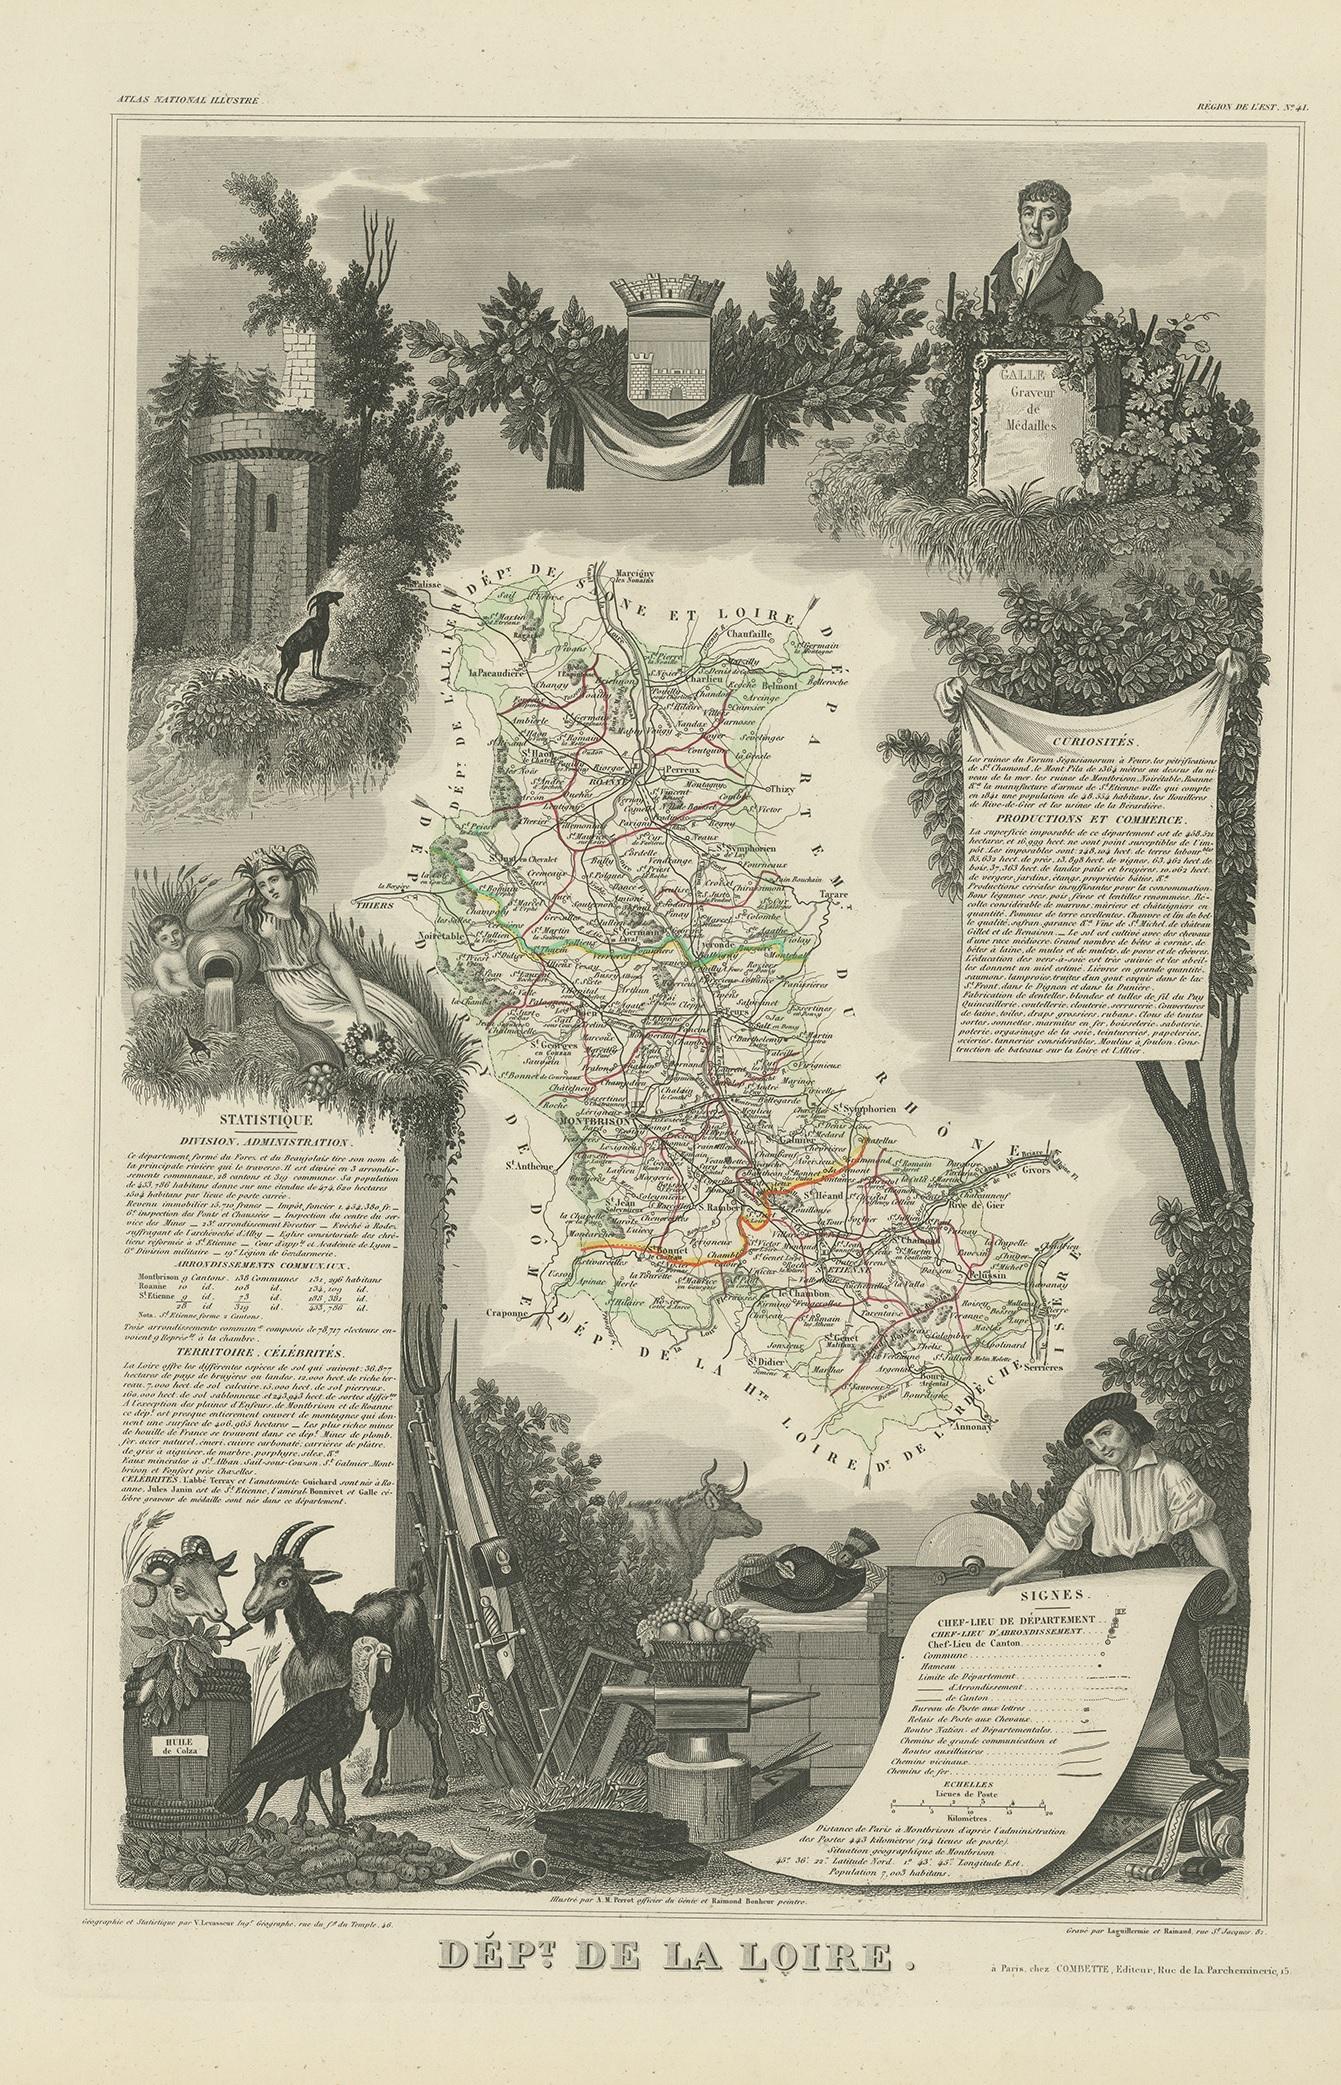 Antique map titled 'Dépt. de la Loire'. Map of the French department of Loire, France. This area of France is part of the Loire Valley wine growing region. The area includes 87 appellations under the Appellation d'origine contrôlée, Vin Délimité de